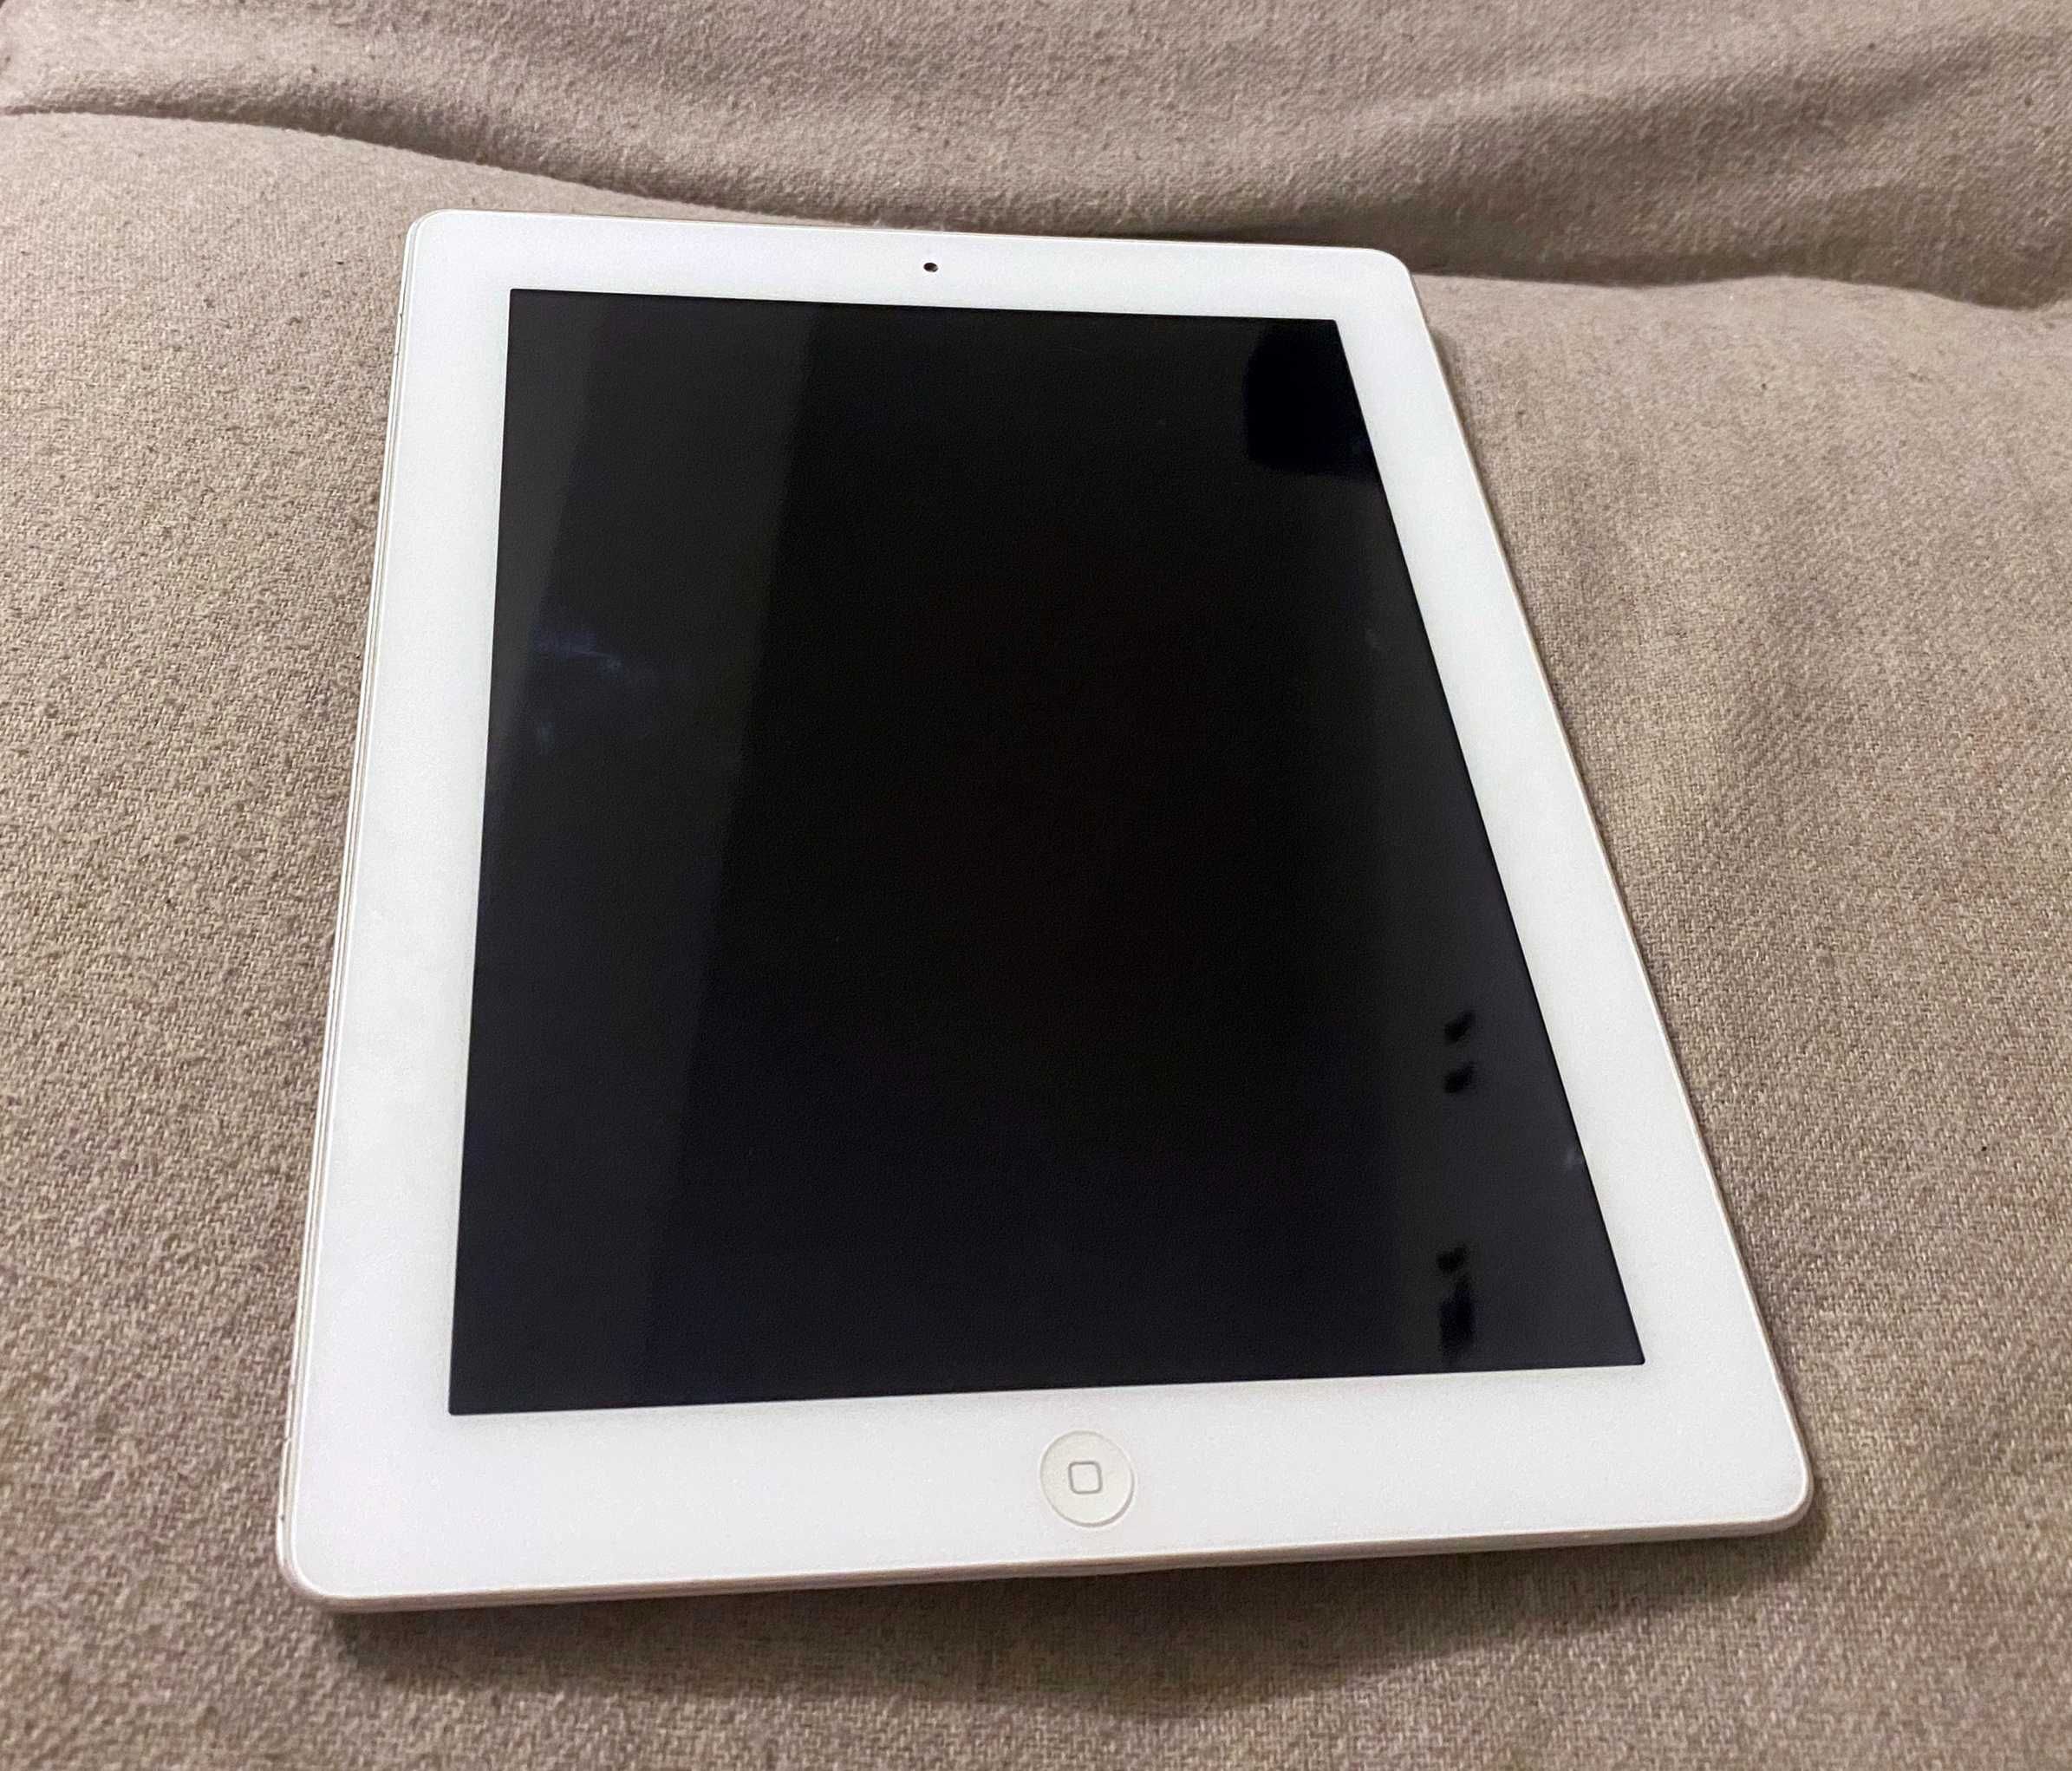 Apple iPad 2 Wi-Fi A1395 - fara incarcator nu porneste colectie retro